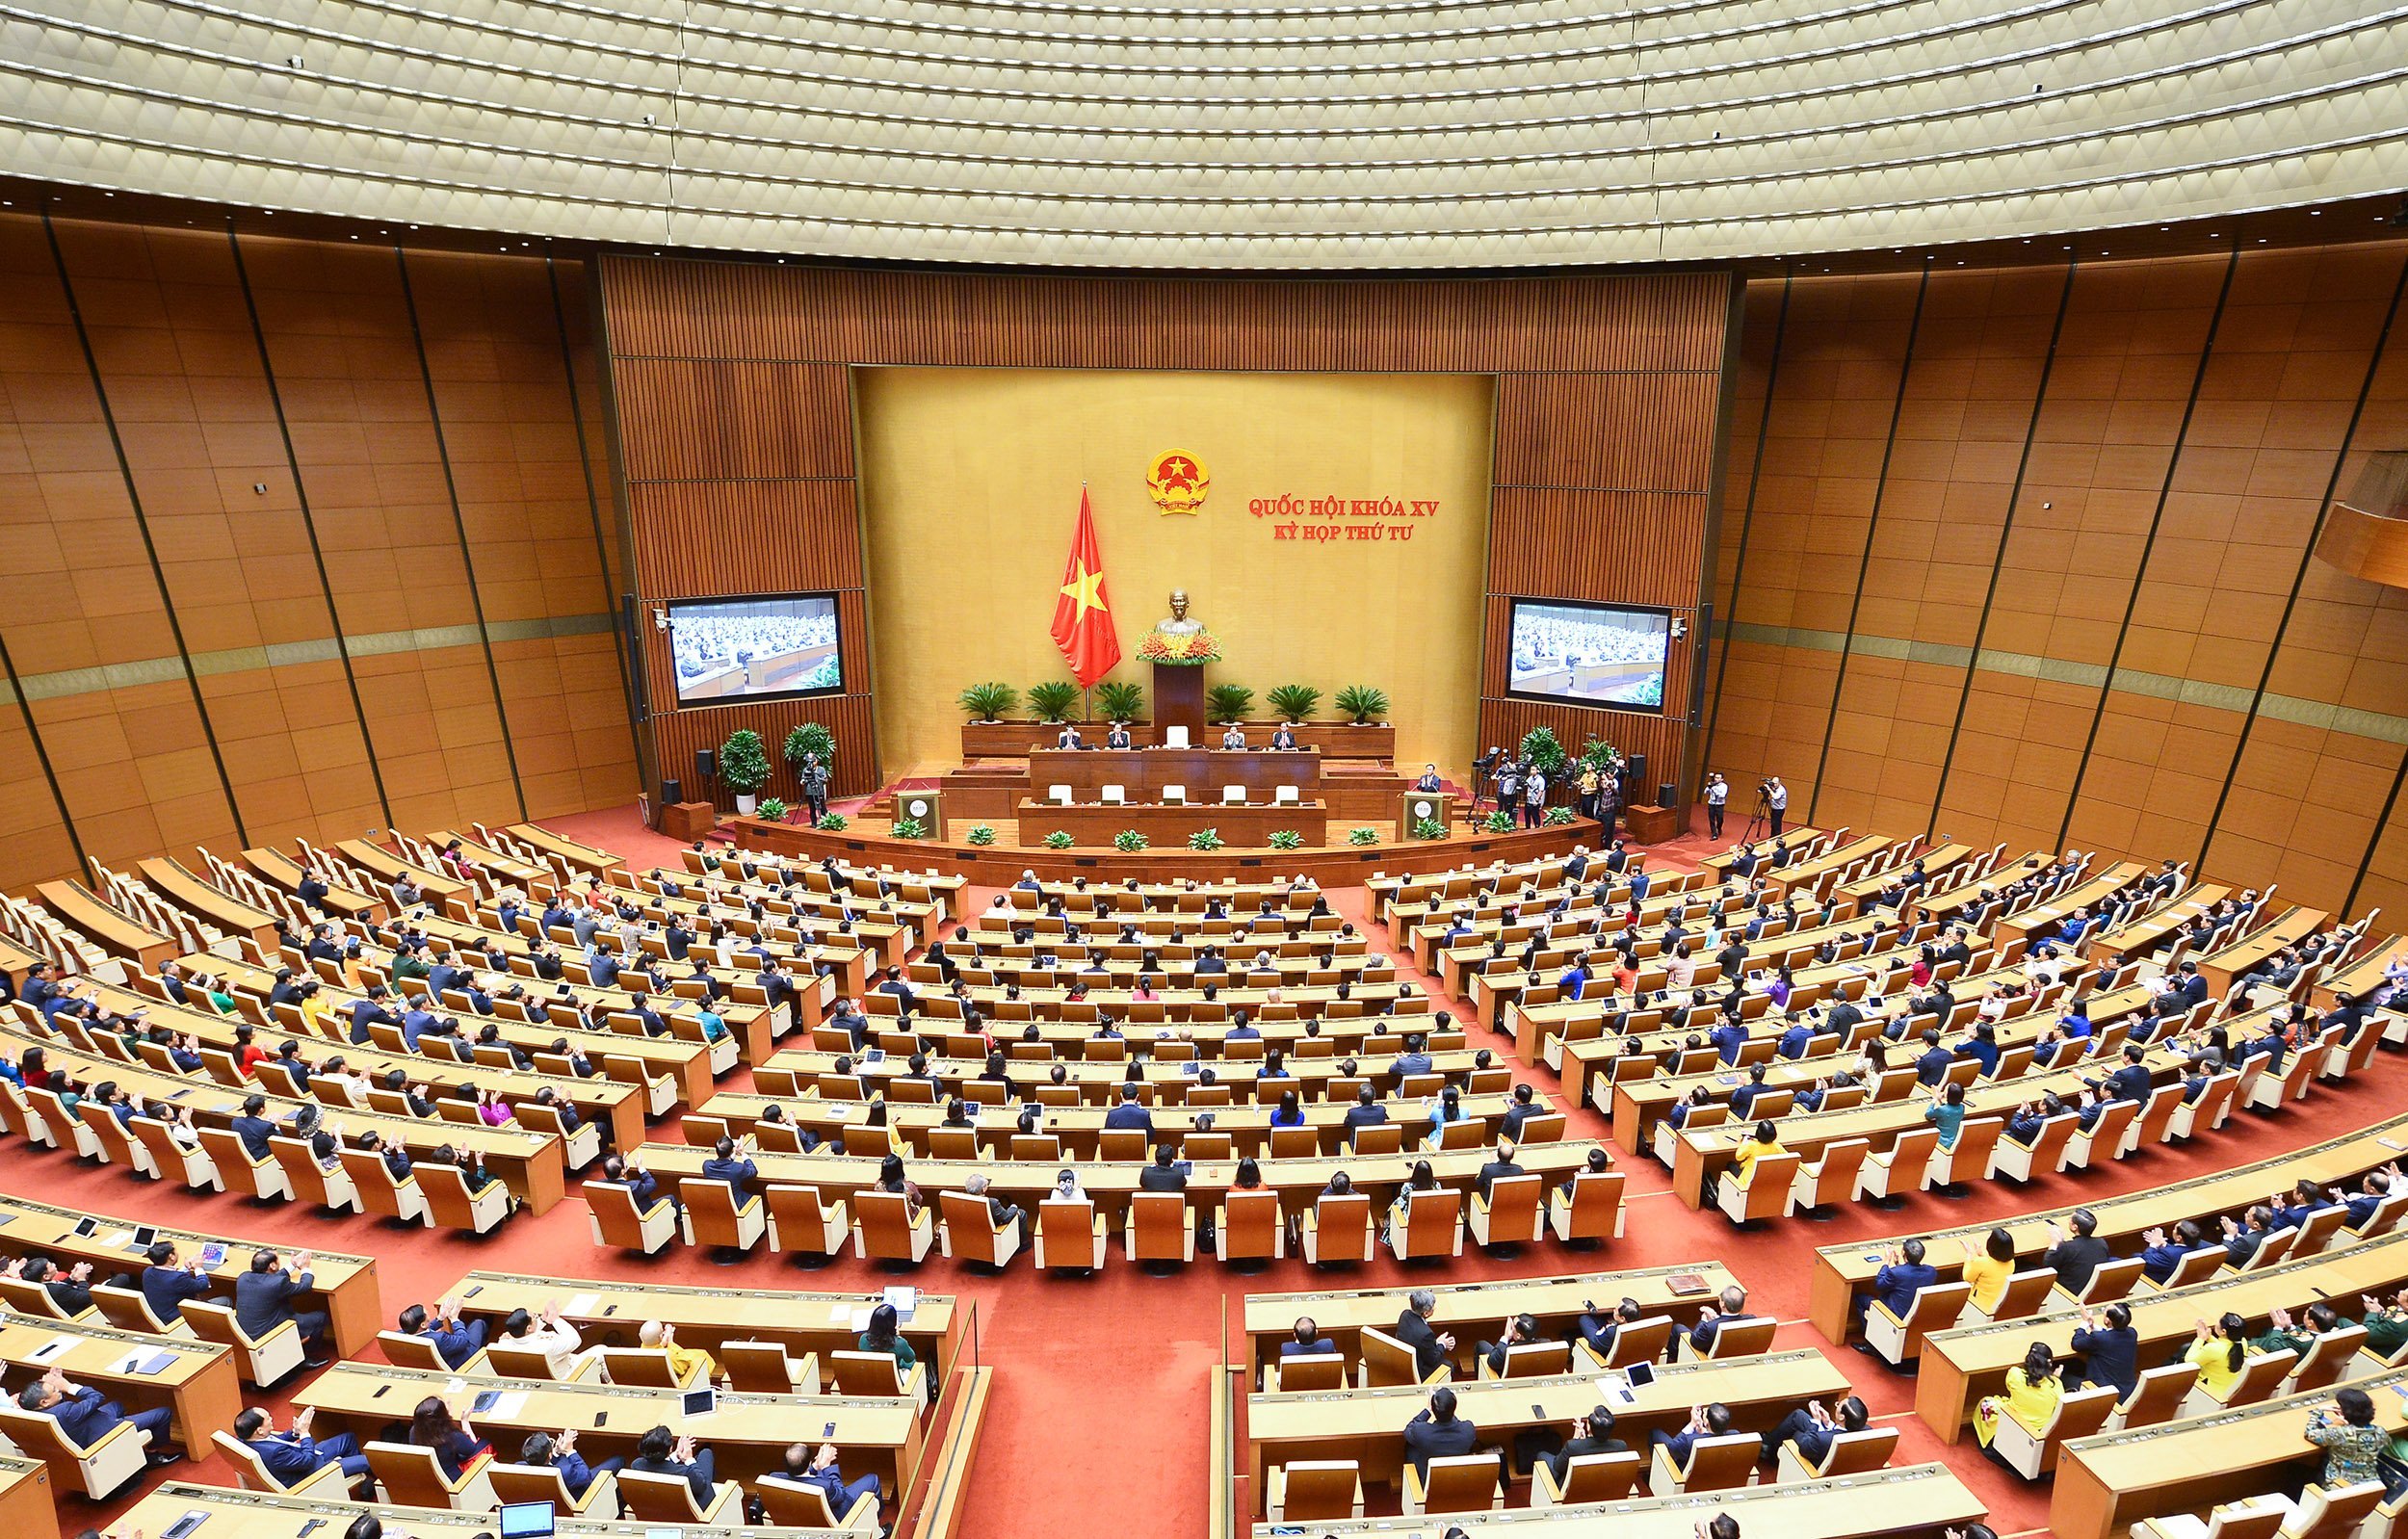 Quốc hội khóa XV bế mạc Kỳ họp thứ 4 sau 21 ngày làm việc vào chiều 15/11. Ảnh: Quốc hội.